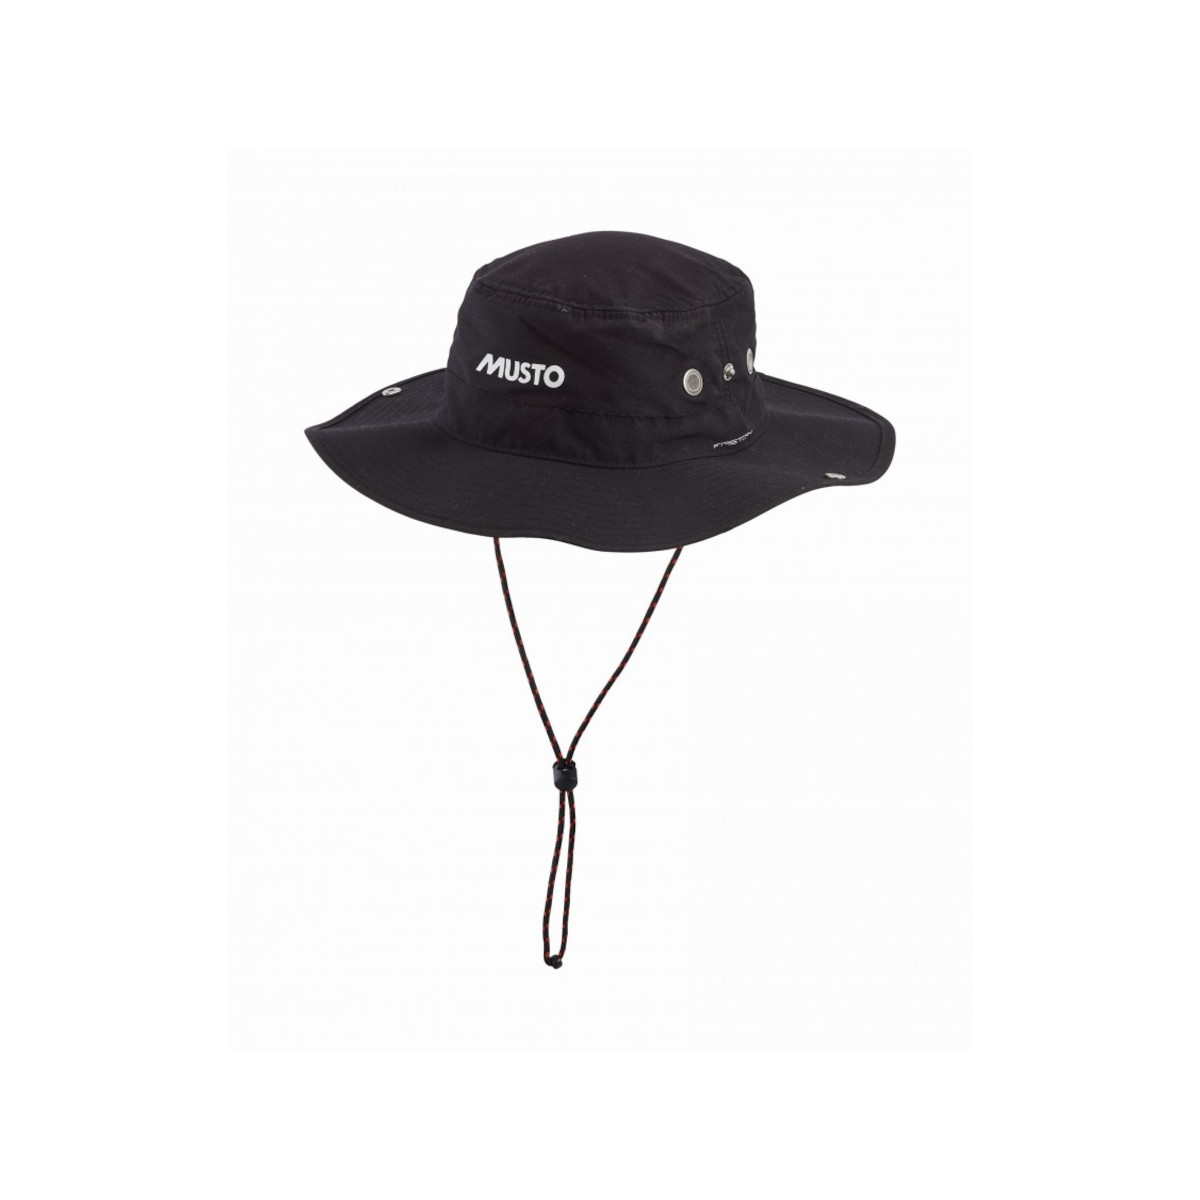 Musto Evolution FD Brimmed chapeau de voile noir, taille L